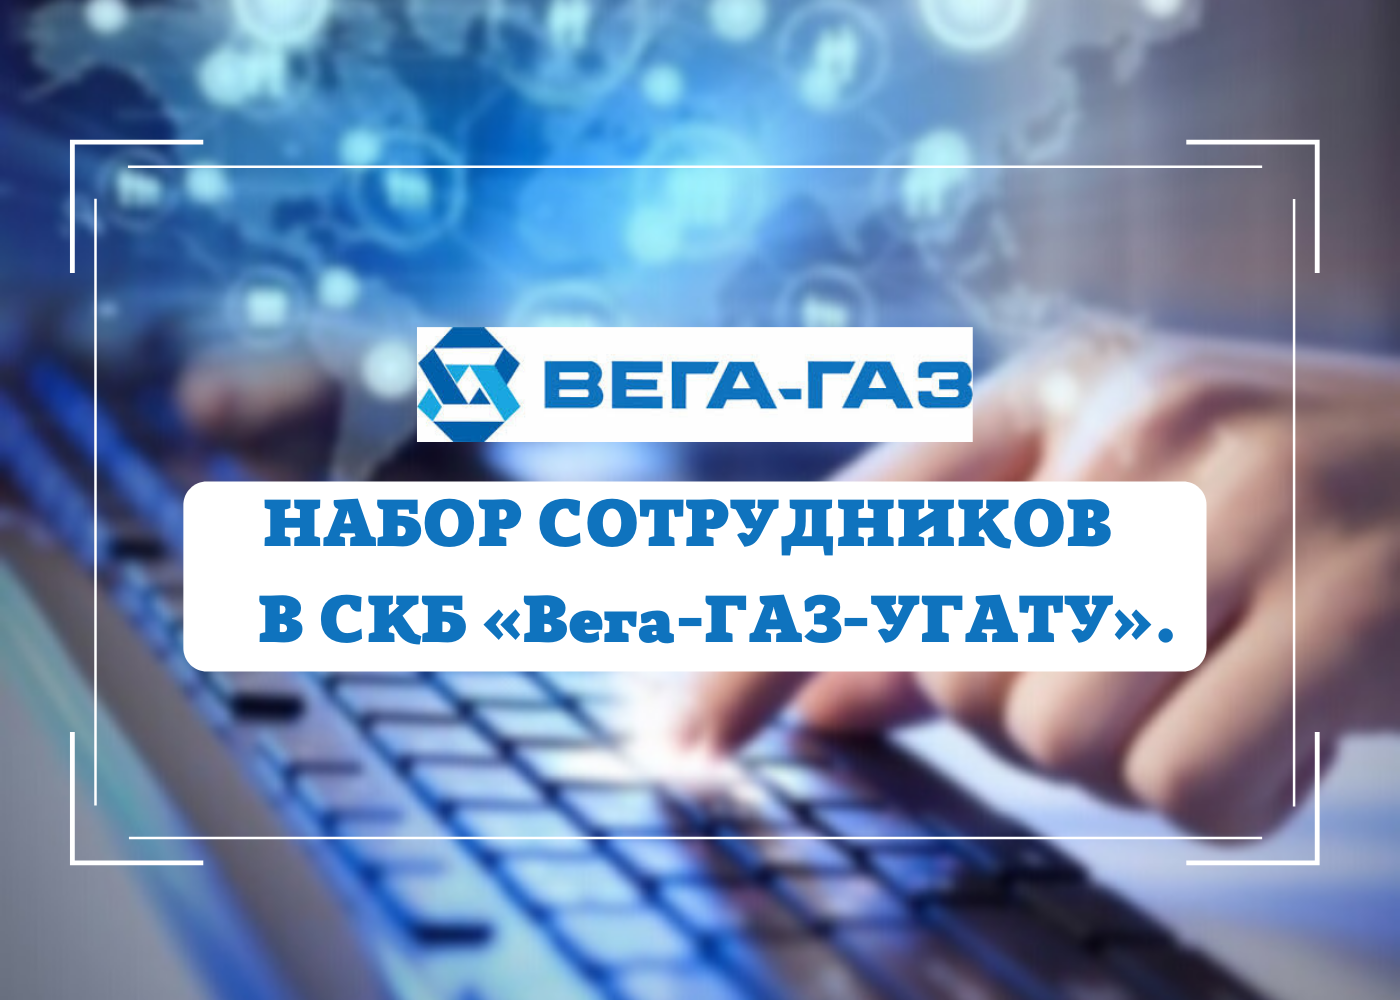 УГАТУ объявляет набор сотрудников в СКБ «Вега-ГАЗ-УГАТУ».